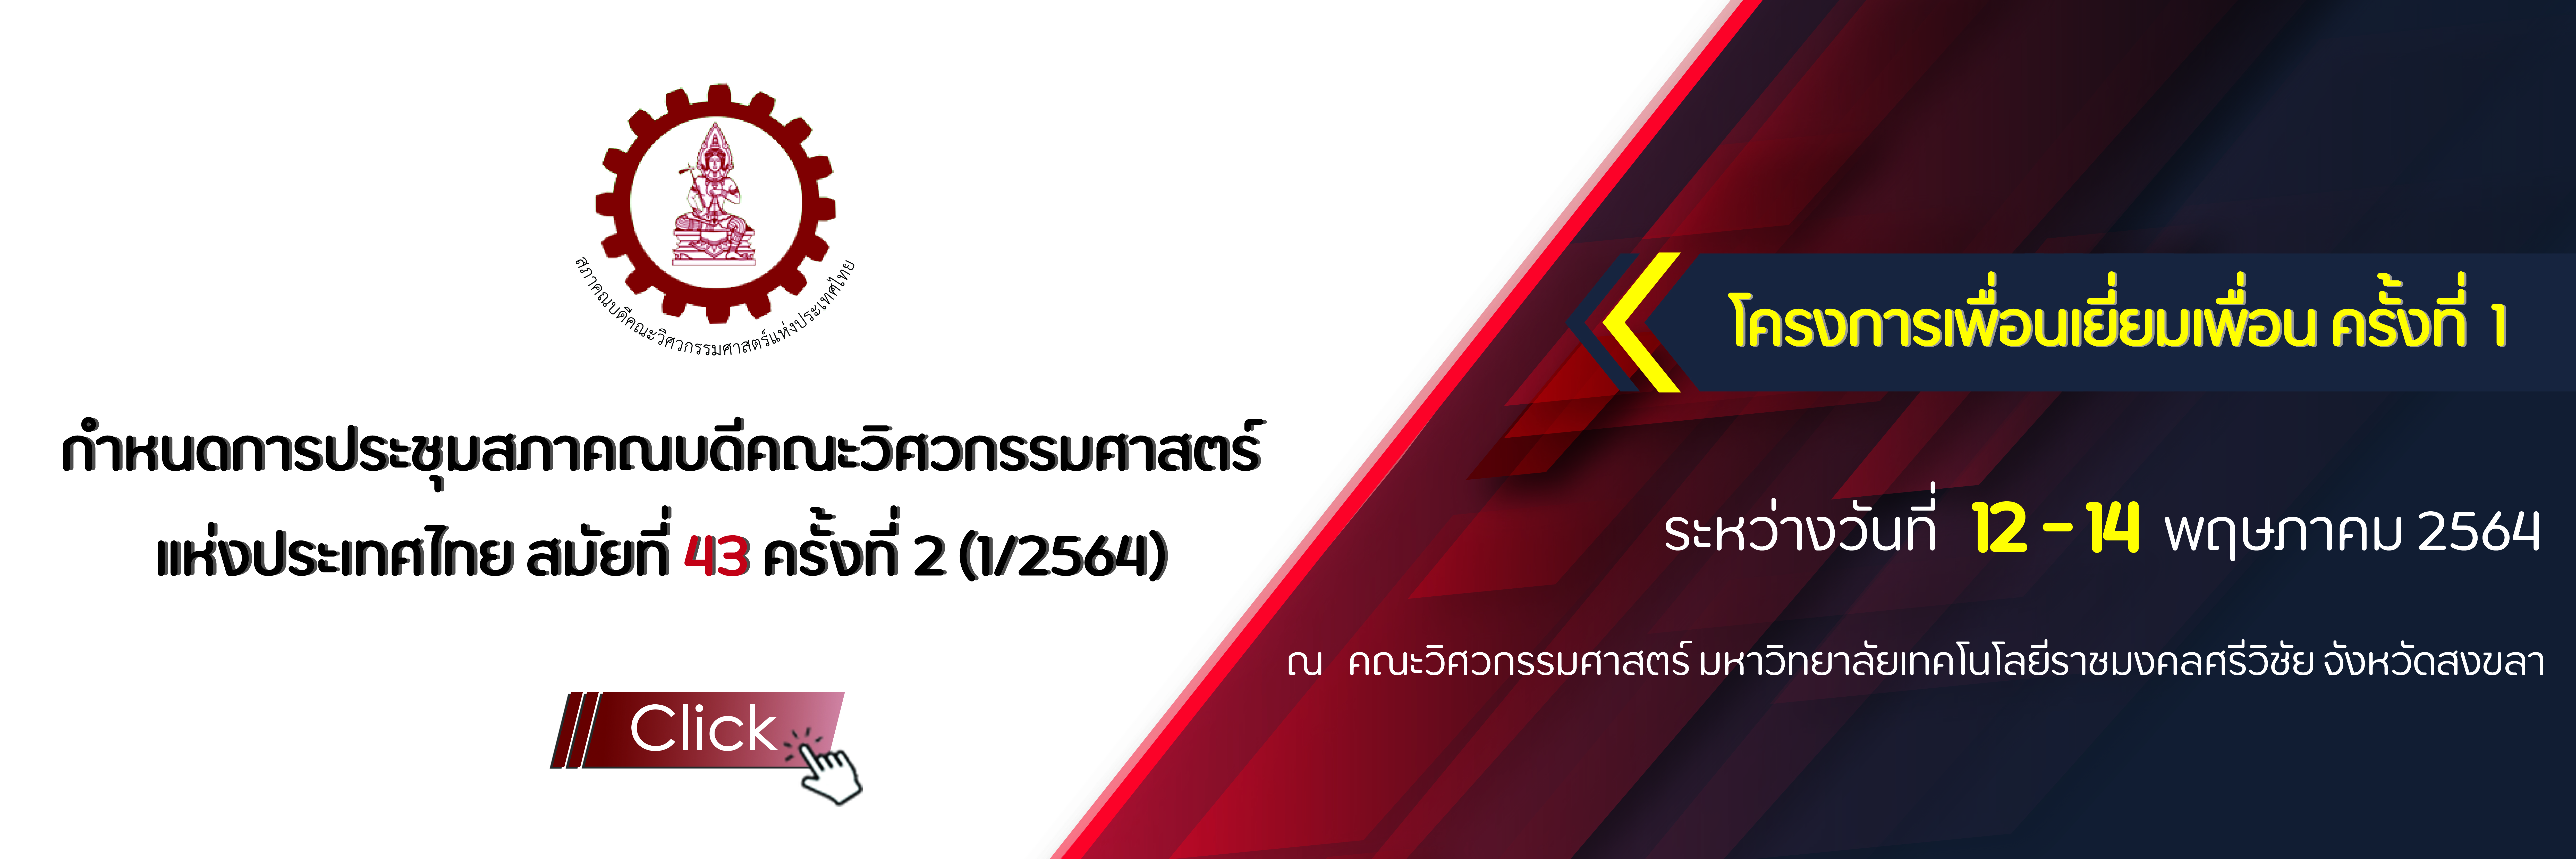 กำหนดการประชุมสภาคณบดีคณะวิศวกรรมศาสตร์  แห่งประเทศไทย สมัยที่ 43 ครั้งที่ 2 (1/2564)